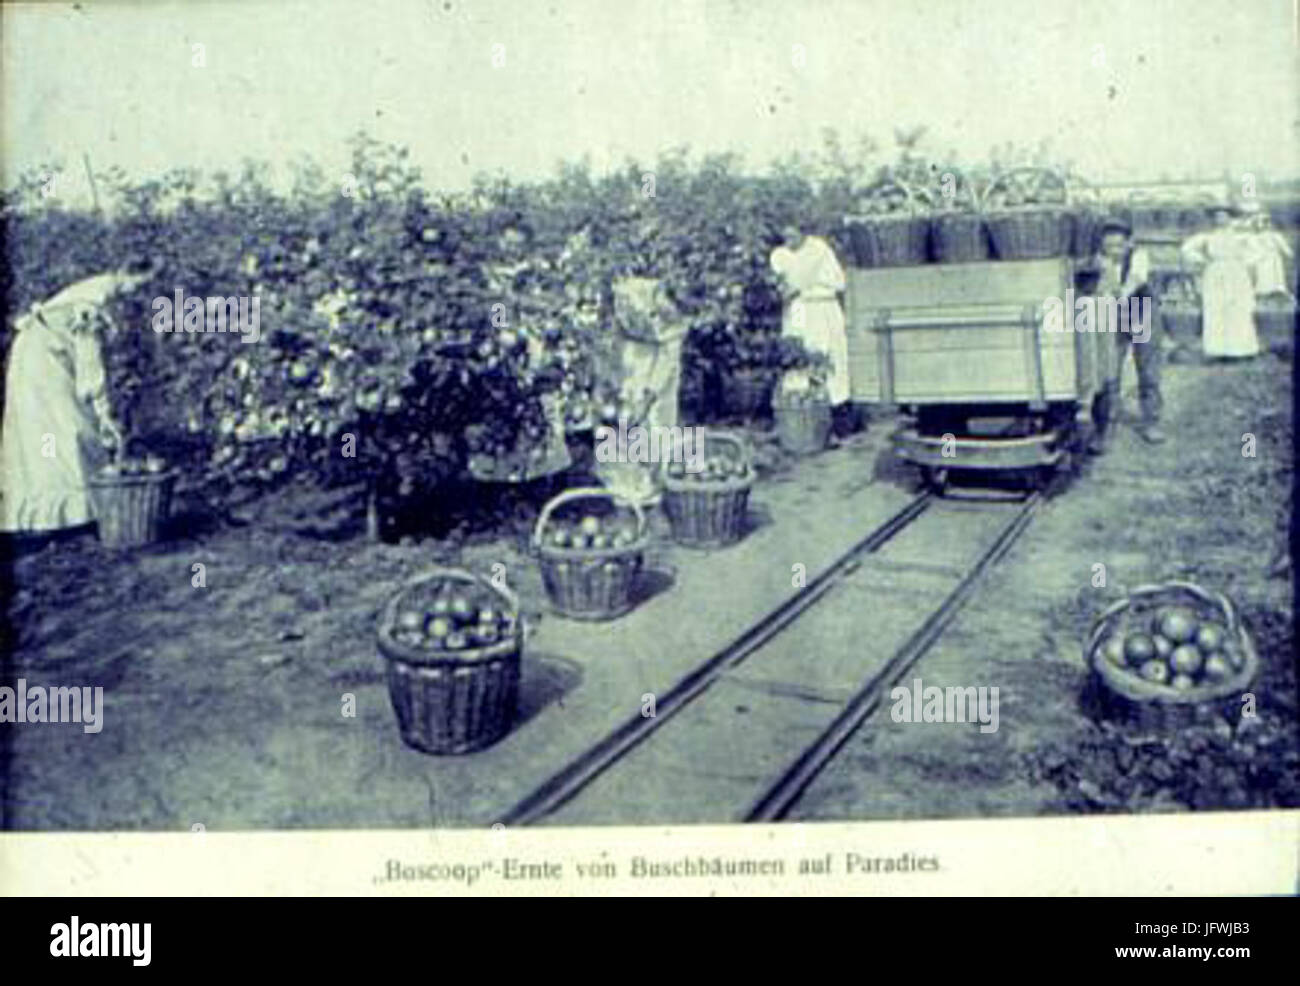 Apfelernte in den Schmitz-Hübsch schen Anlagen um 1900 Stock Photo